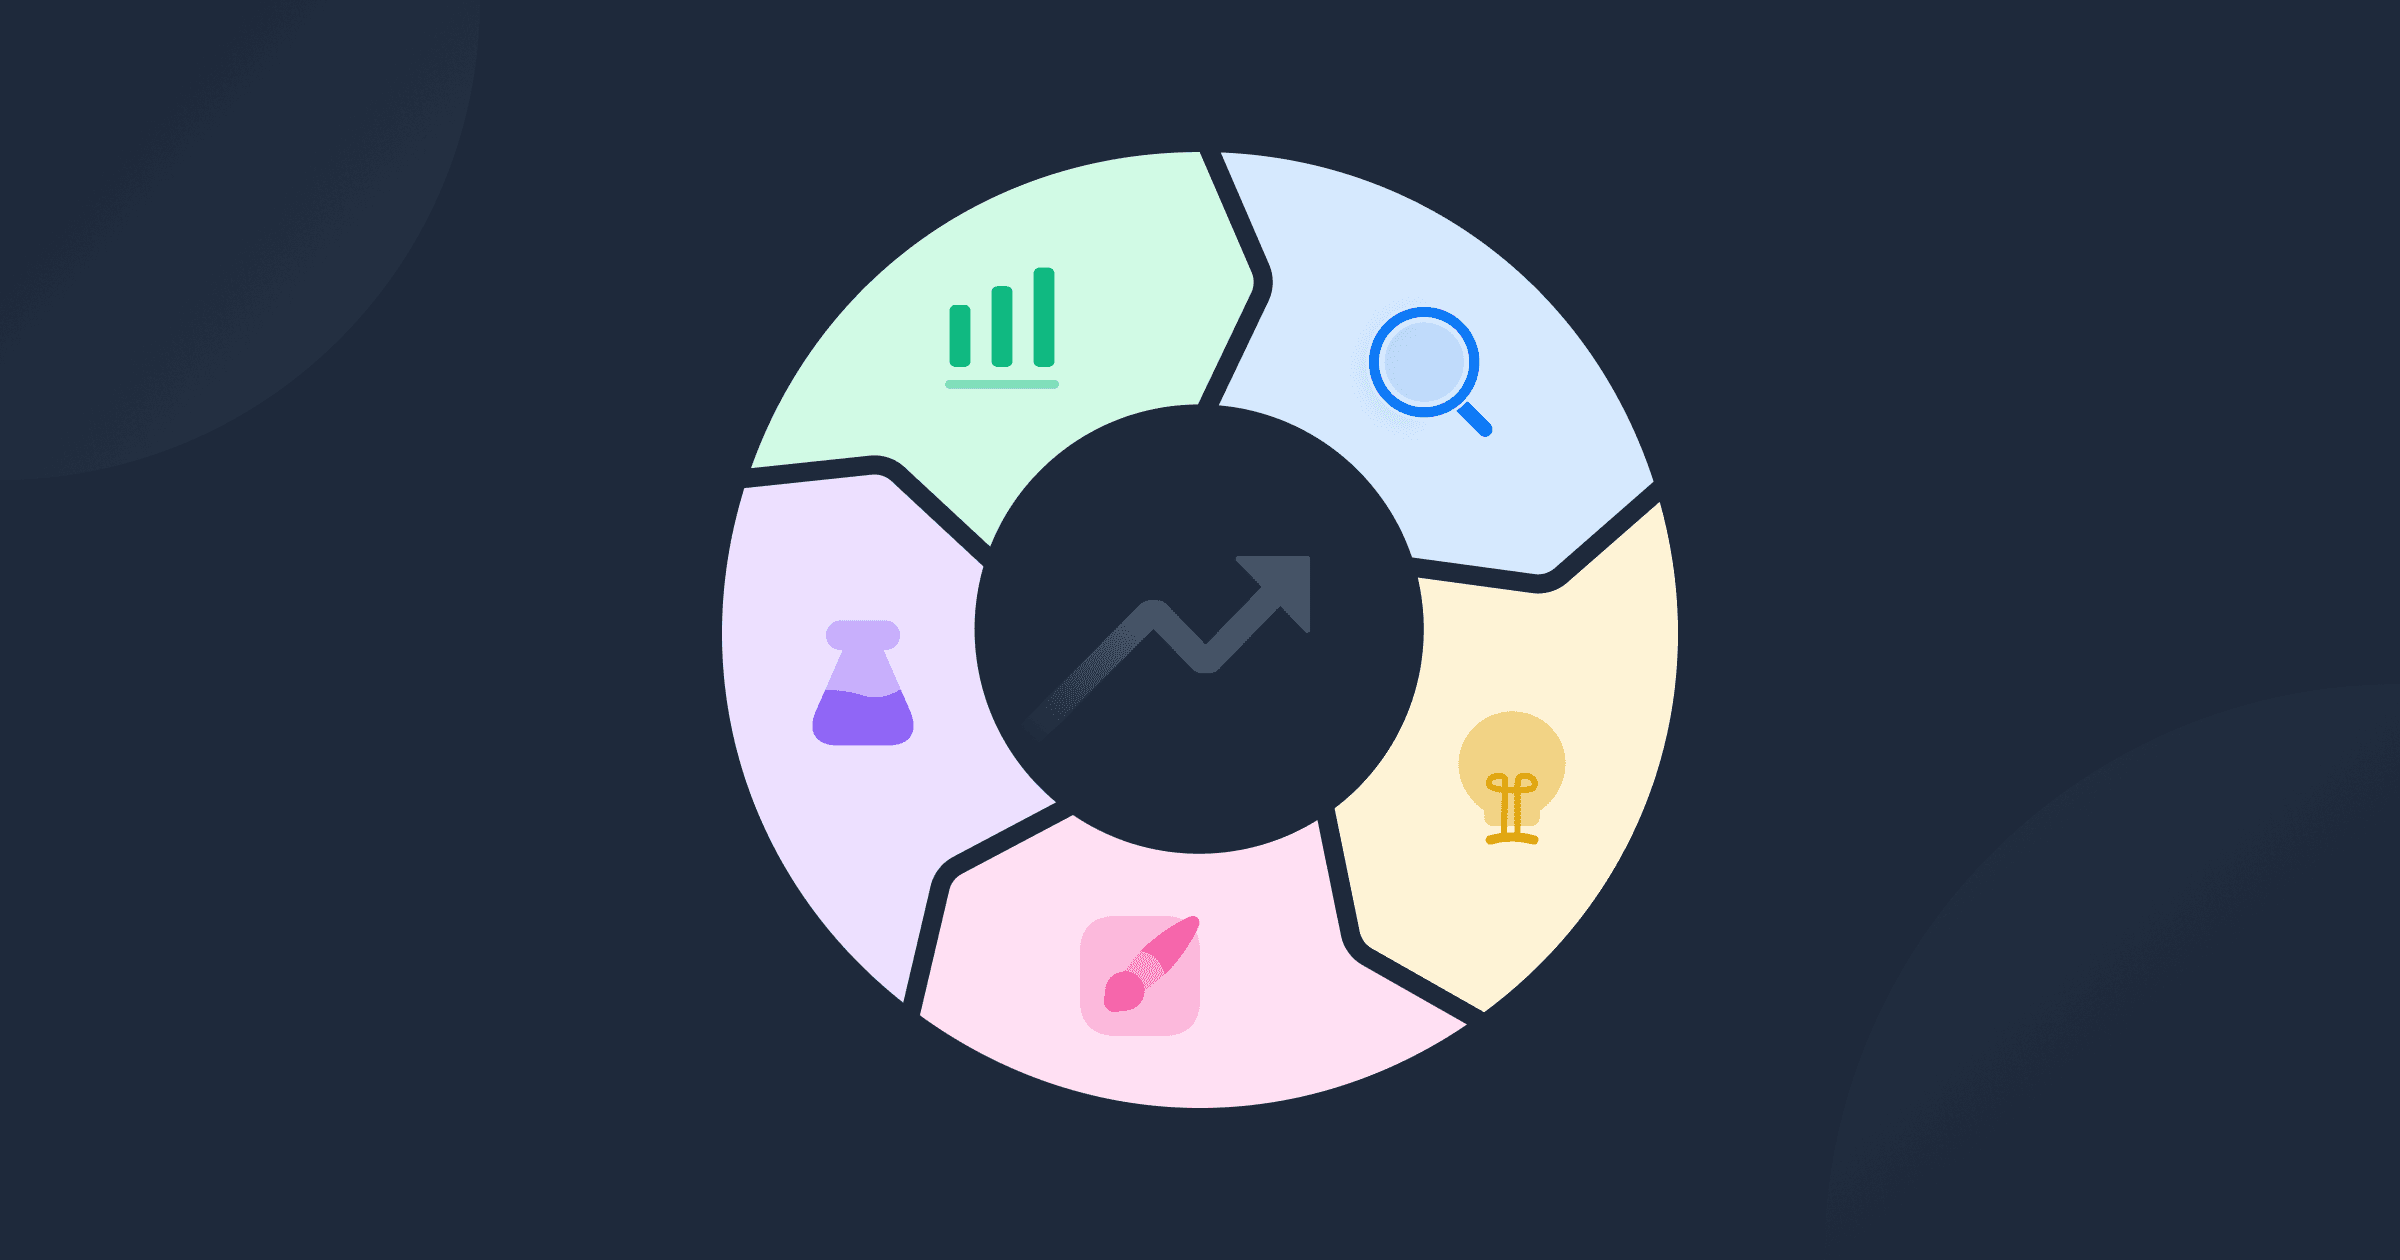 Imagem contendo um círculo representando as etapas do ciclo CRO: análise, idealização, implementação, testes e verificação de resultados.